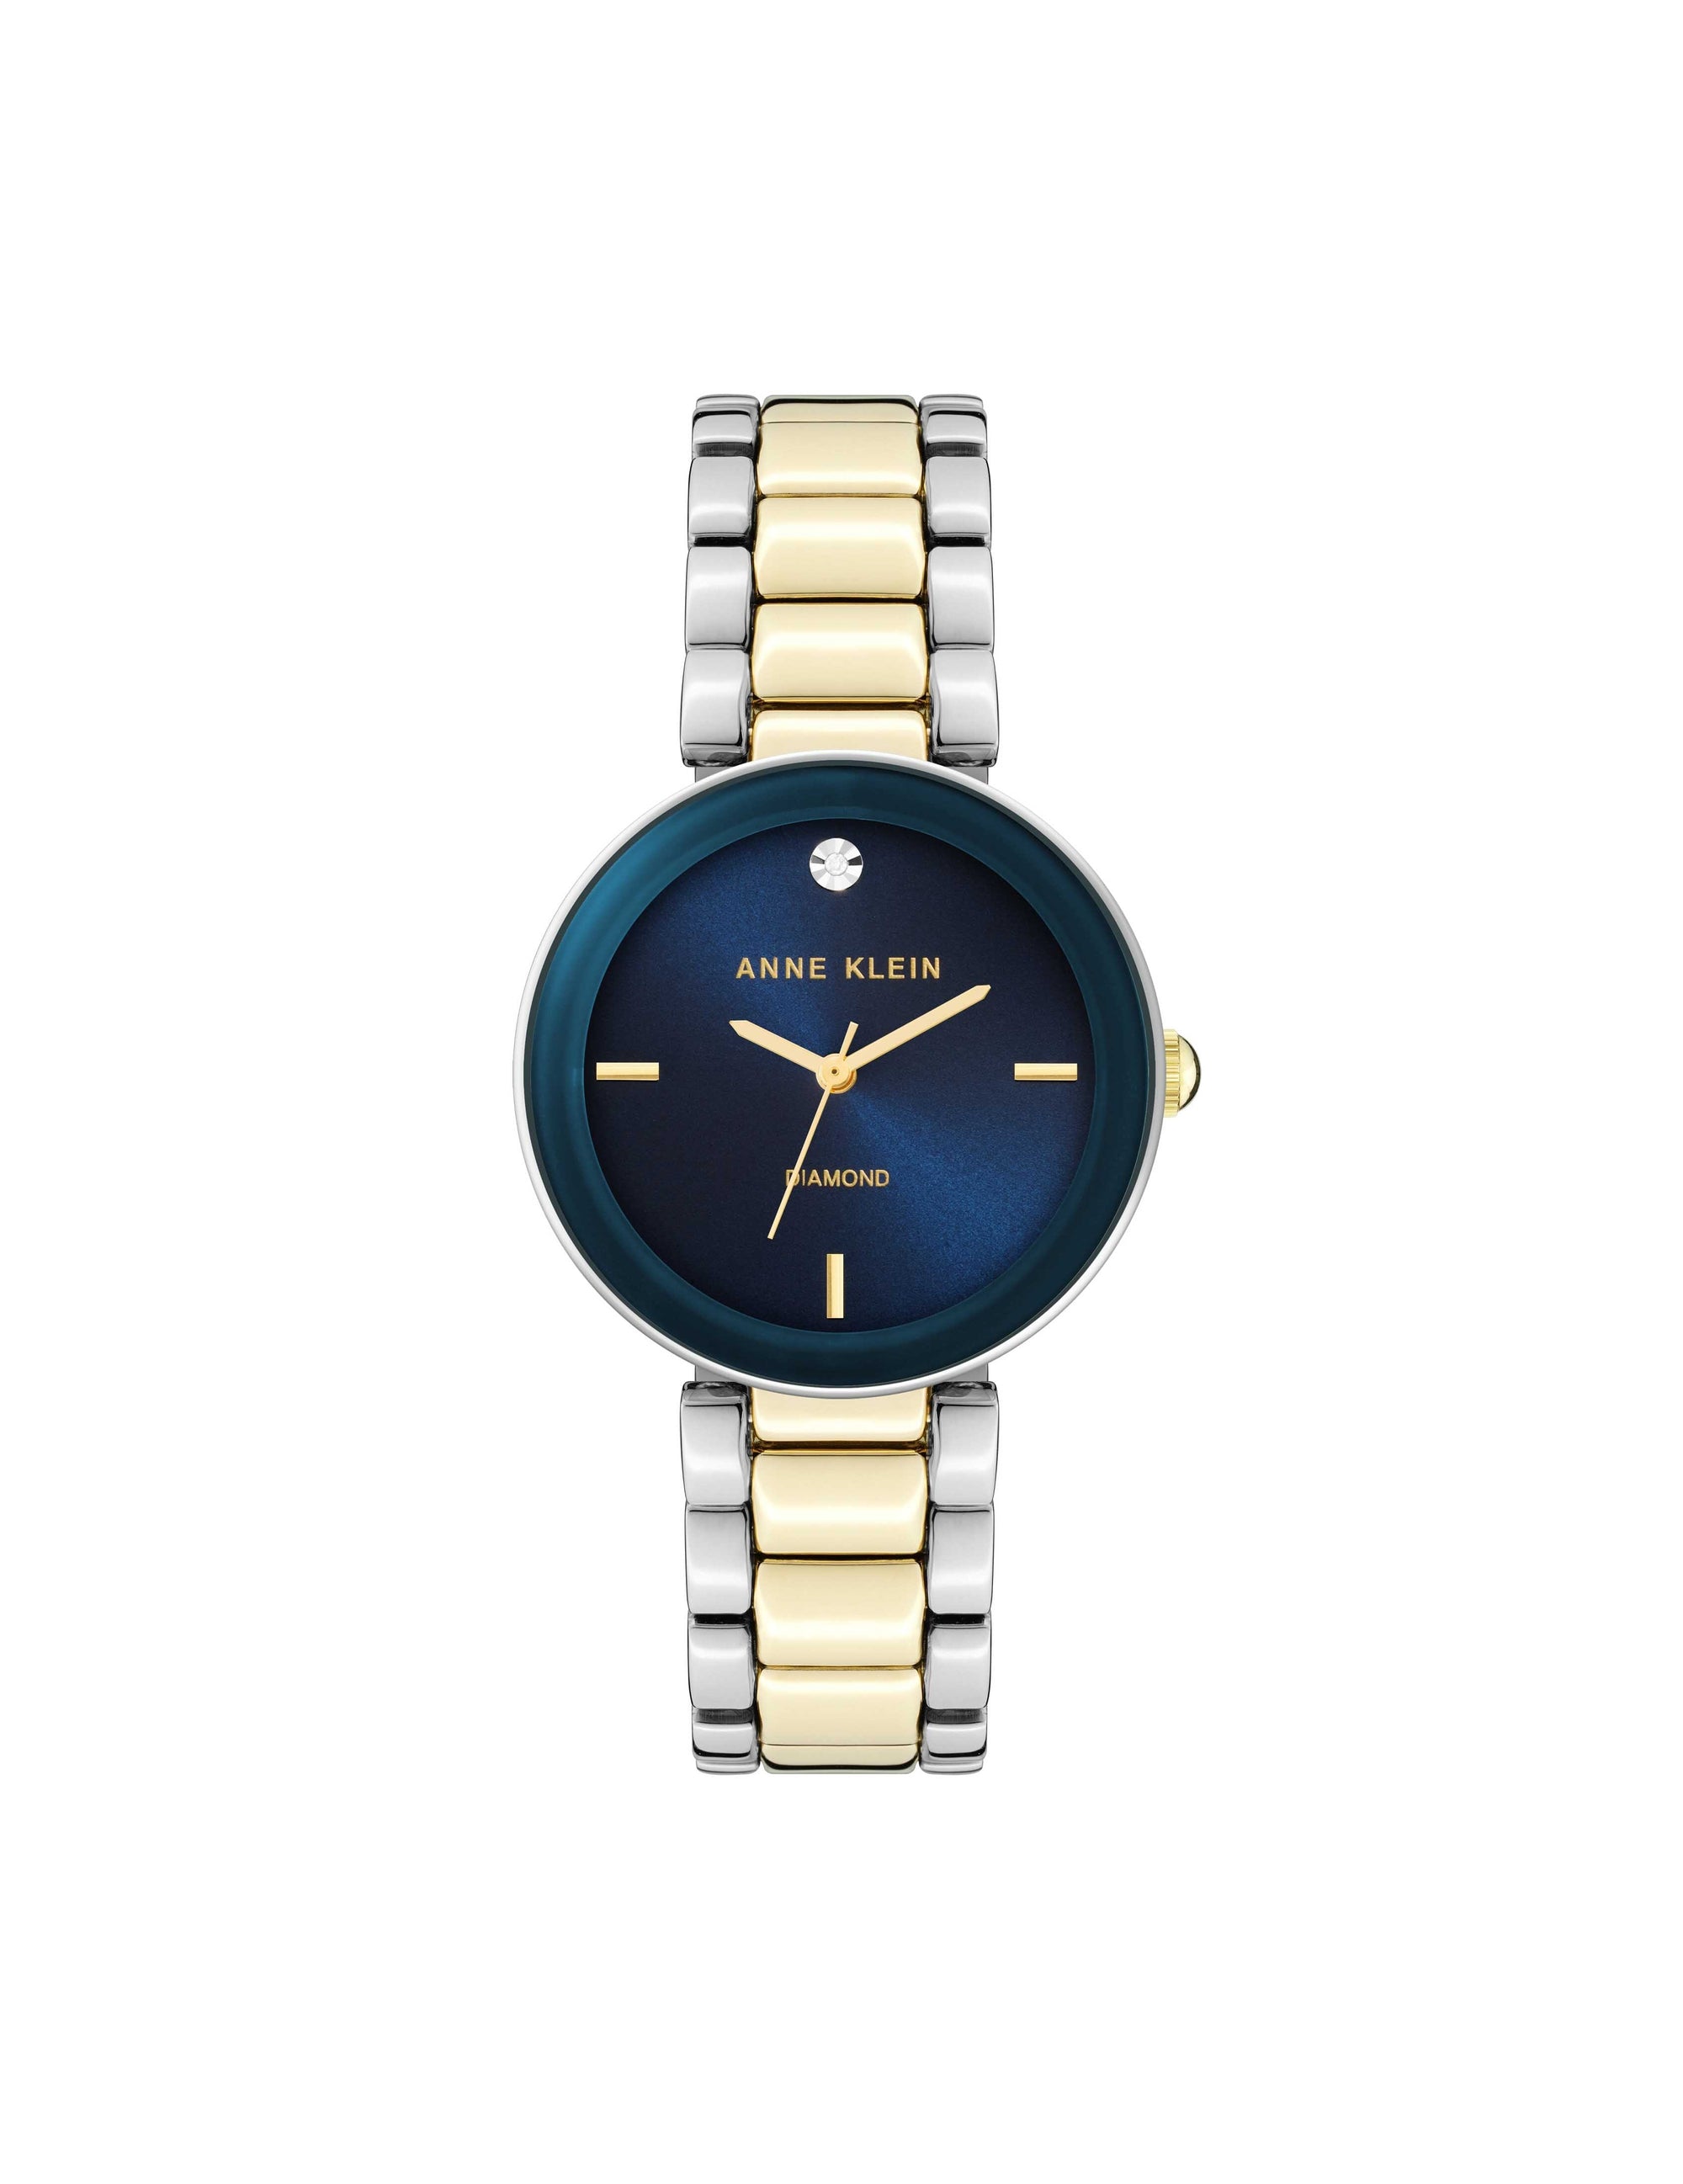 Anne Klein Watch, Vintage Women's ANNE KLEIN II Gold and Chrome Plated  Quartz Watch, Vintage Designer Watch, Gift for Her, Dress Watch - Etsy